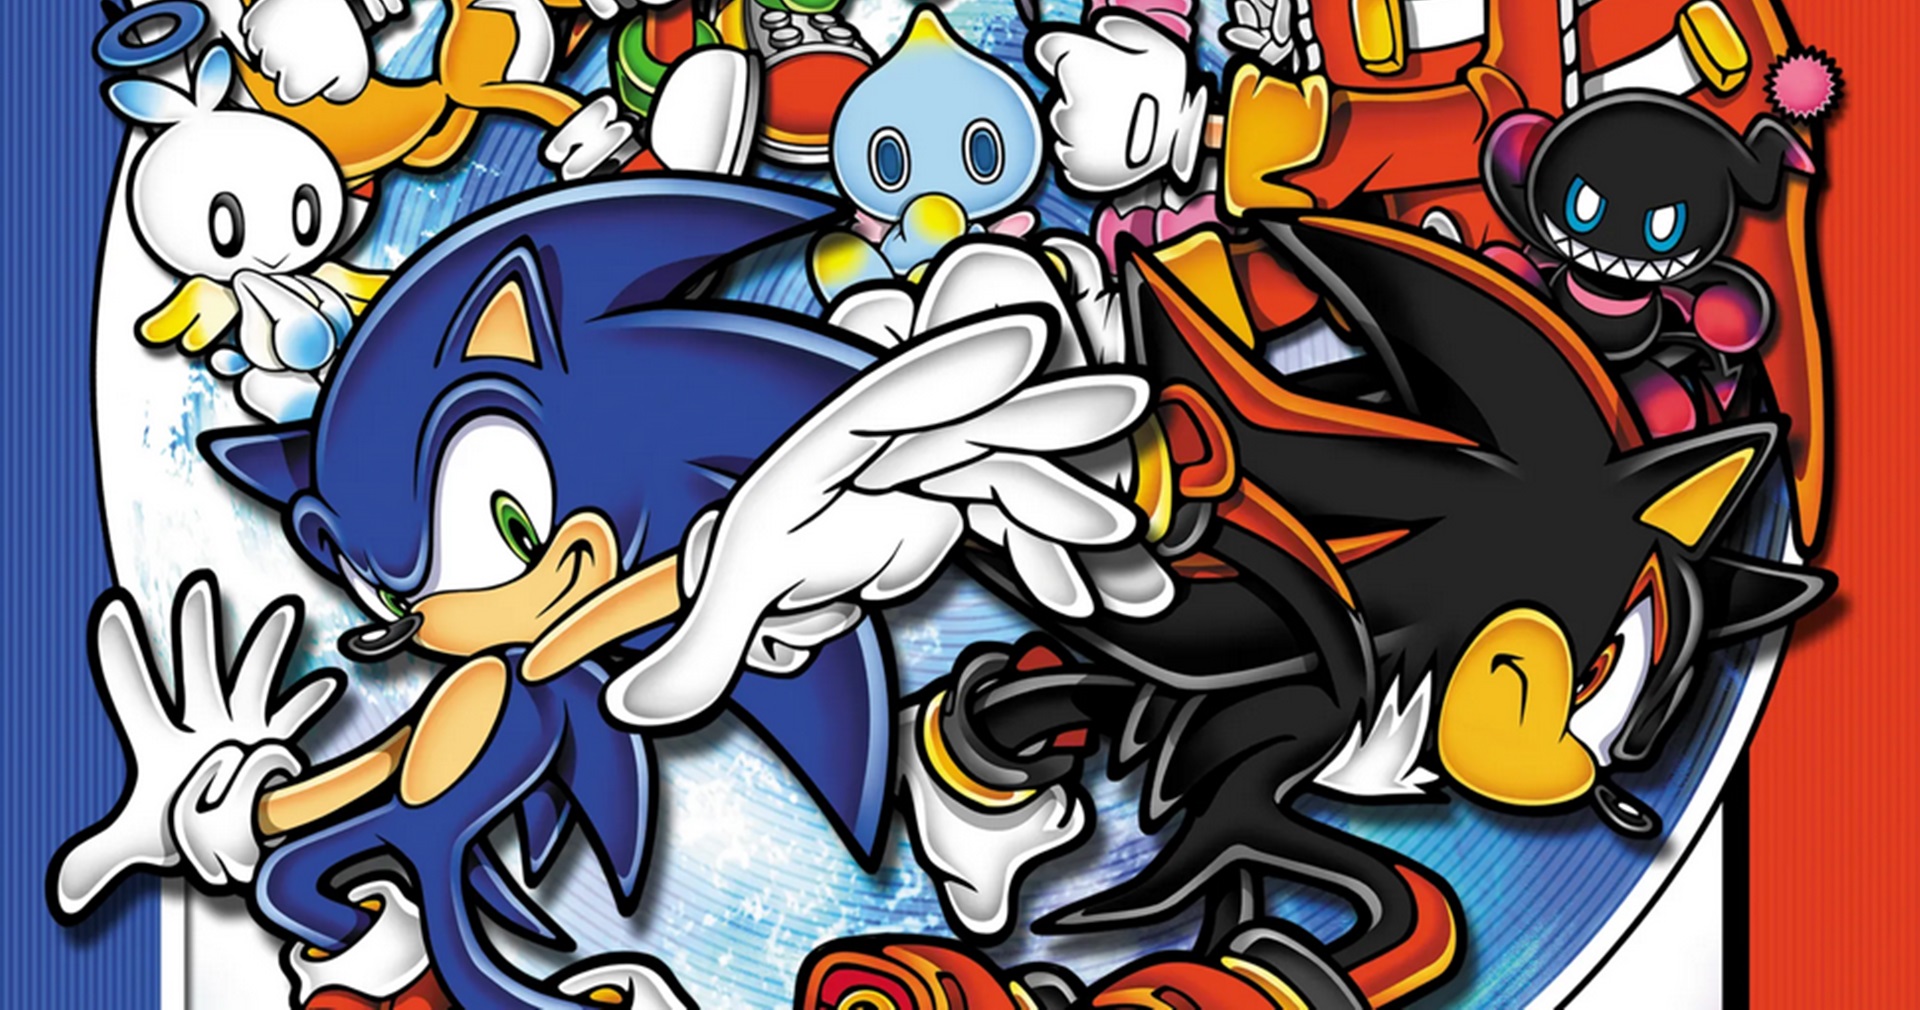 ผู้สร้างเกม Sonic บอกว่าทั้งสุขและเศร้า ที่เห็น Sonic ไปออกบนคอนโซลอื่นที่ไม่ใช่ของ SEGA